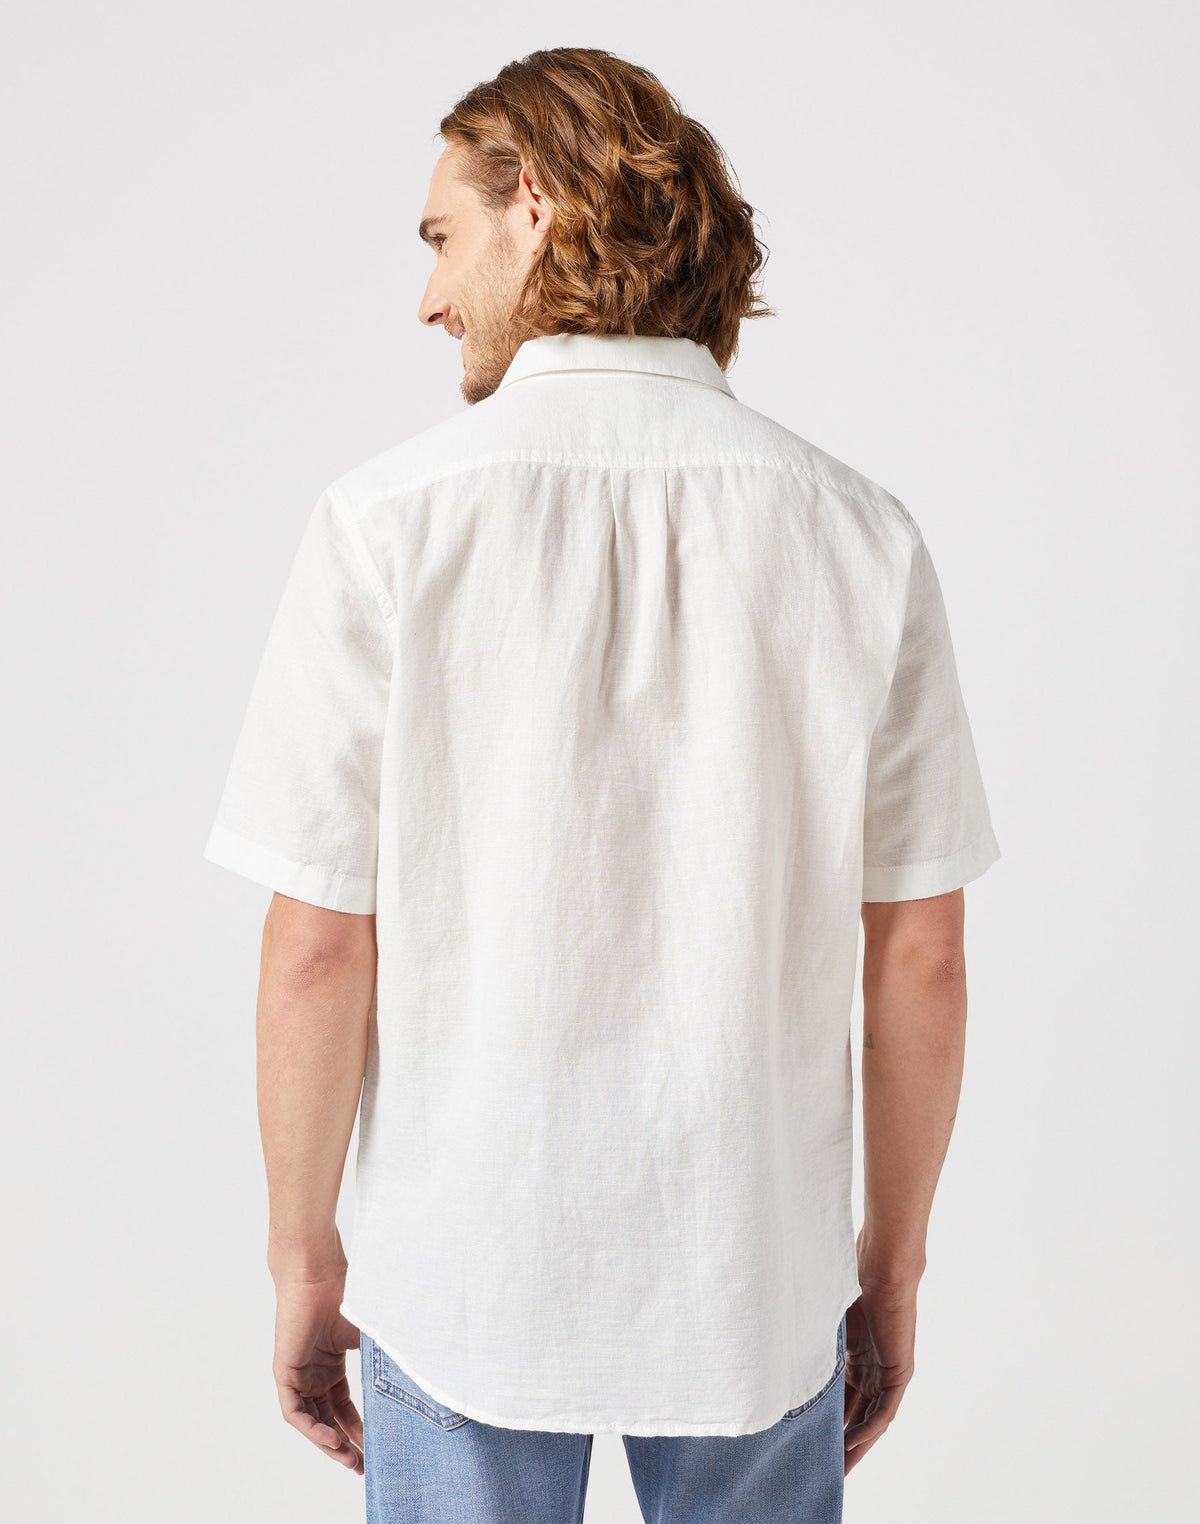 One Pocket Shirt in Worn White